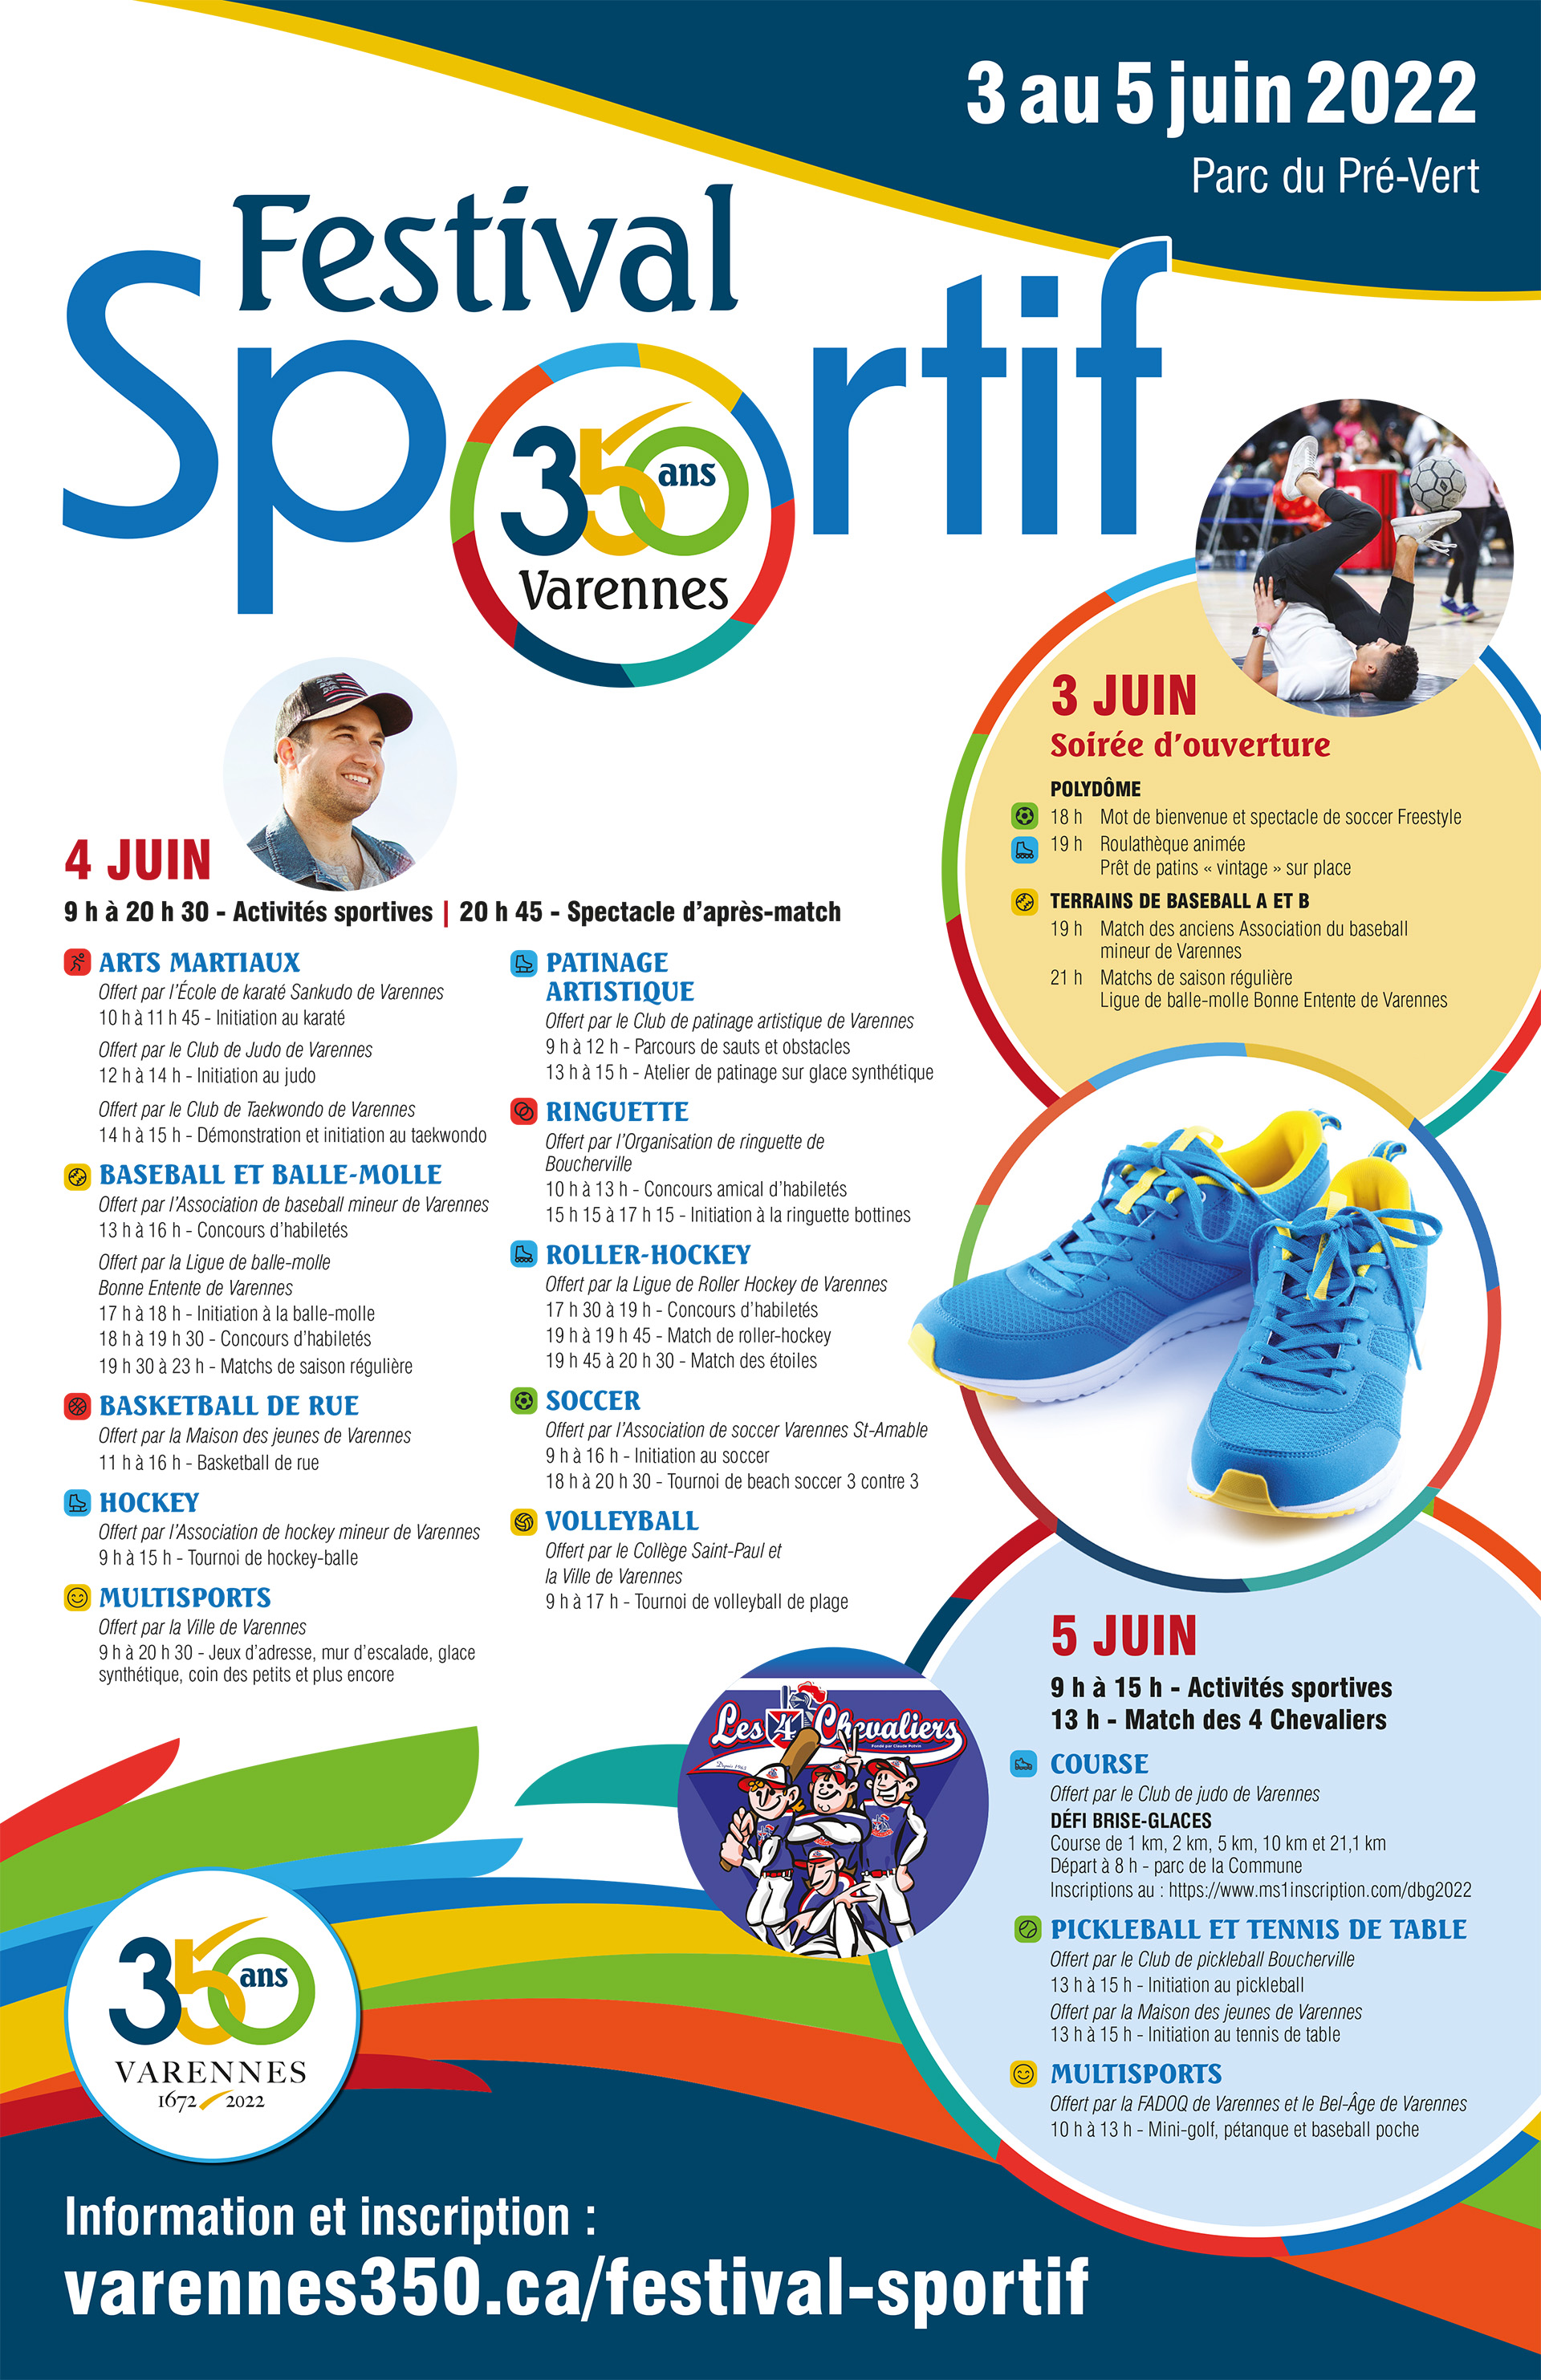 2022-05-23_Programme-festival-sportif.jpg (1.39 MB)